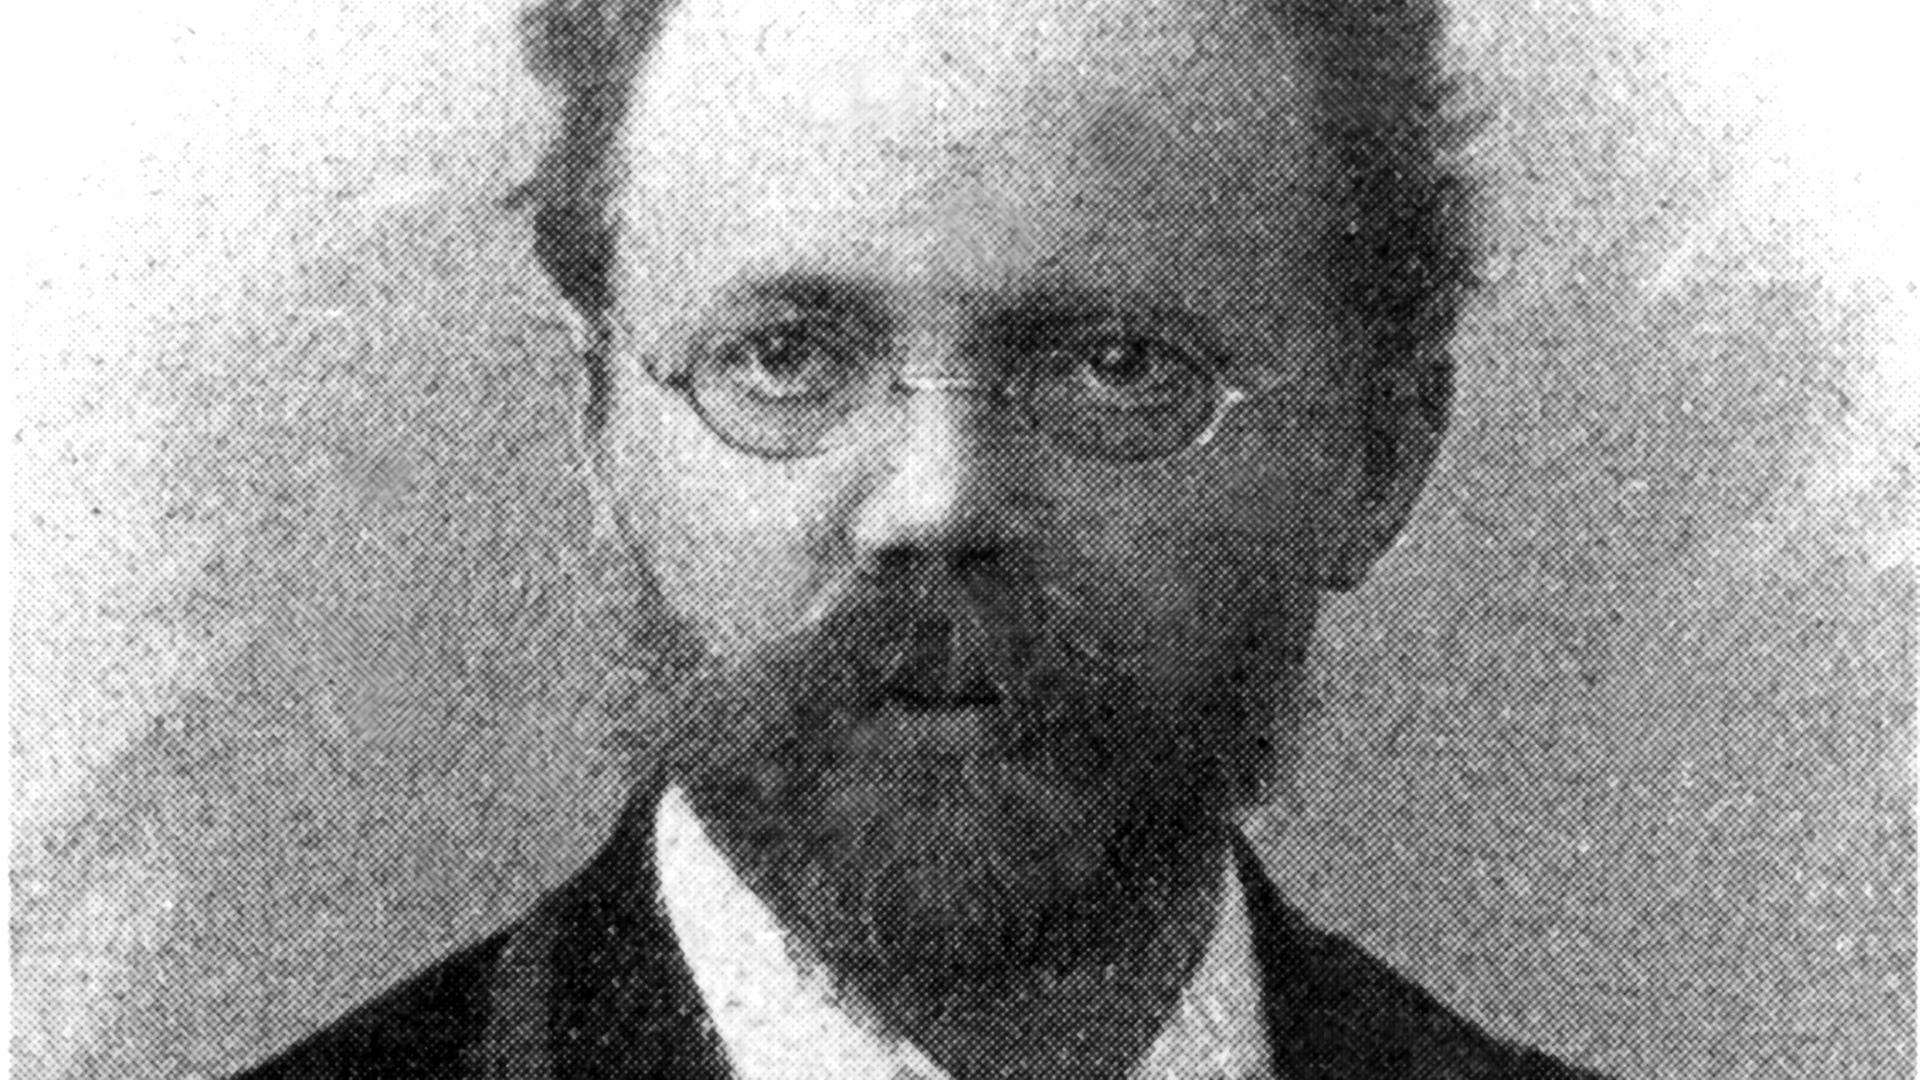 Der Komponist (u.a. "Hänsel und Gretel") in einer zeitgenössischen Aufnahme. Engelbert Humperdinck wurde am 1. September 1854 in Siegburg geboren und ist am 27. September 1921 in Neustrelitz gestorben.